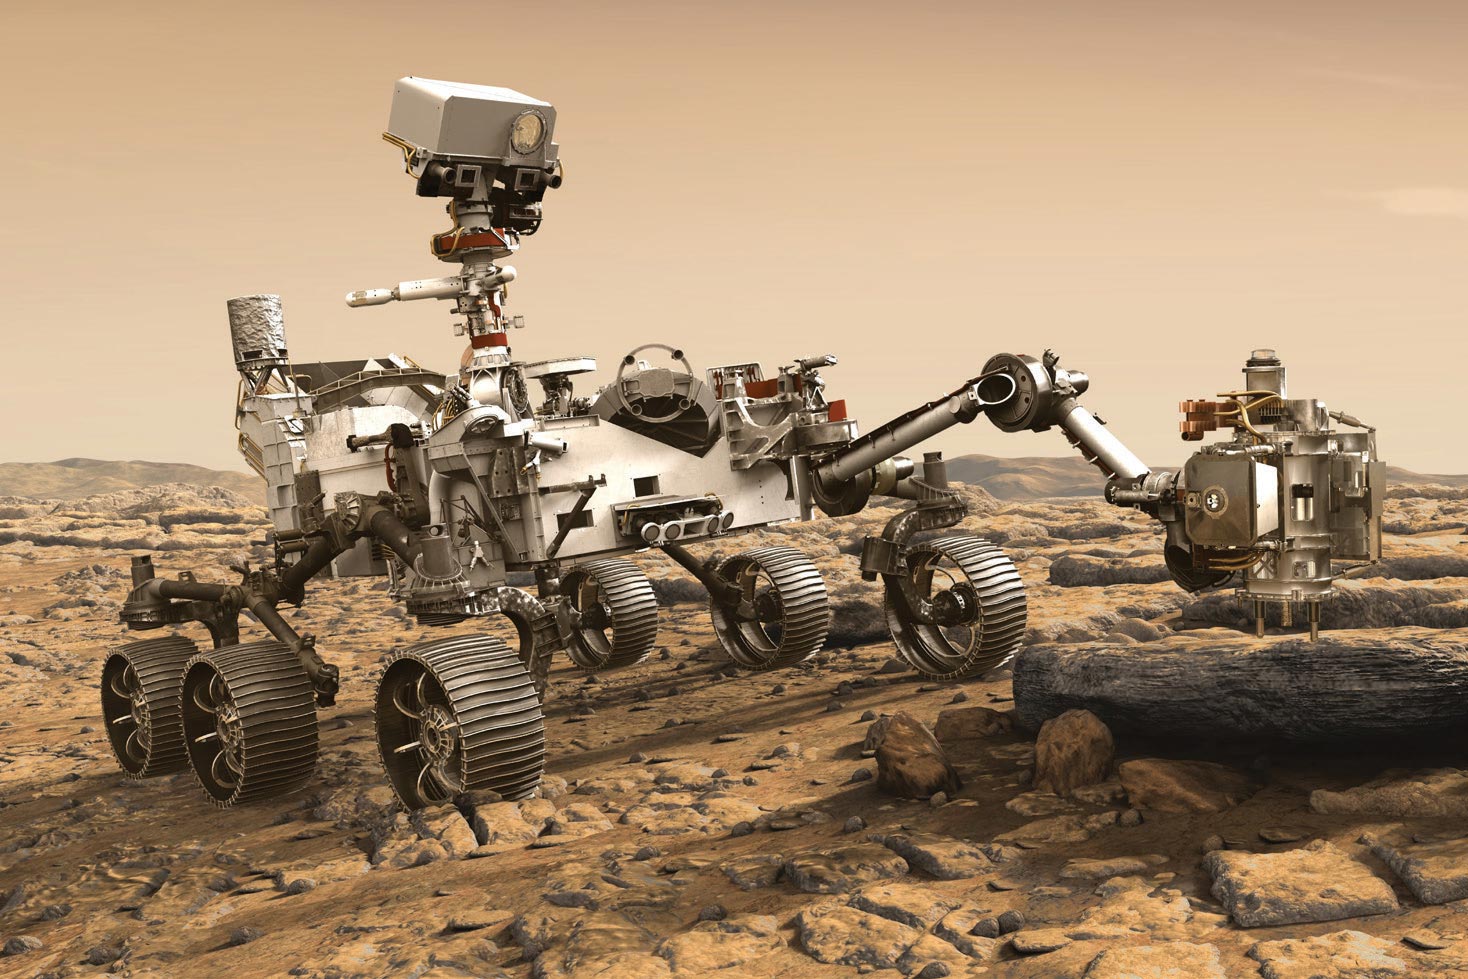 MIT Teams Prepare for Mars Perseverance Rover Landing